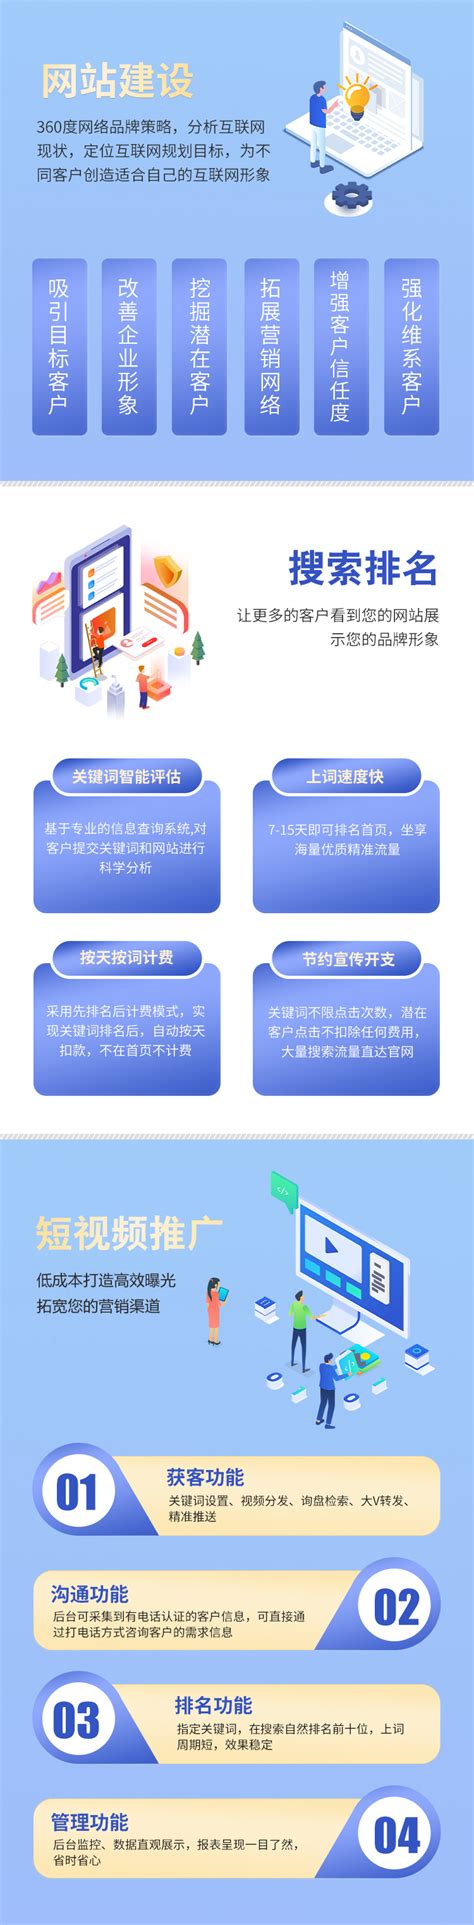 浙江网站建设营销服务平台